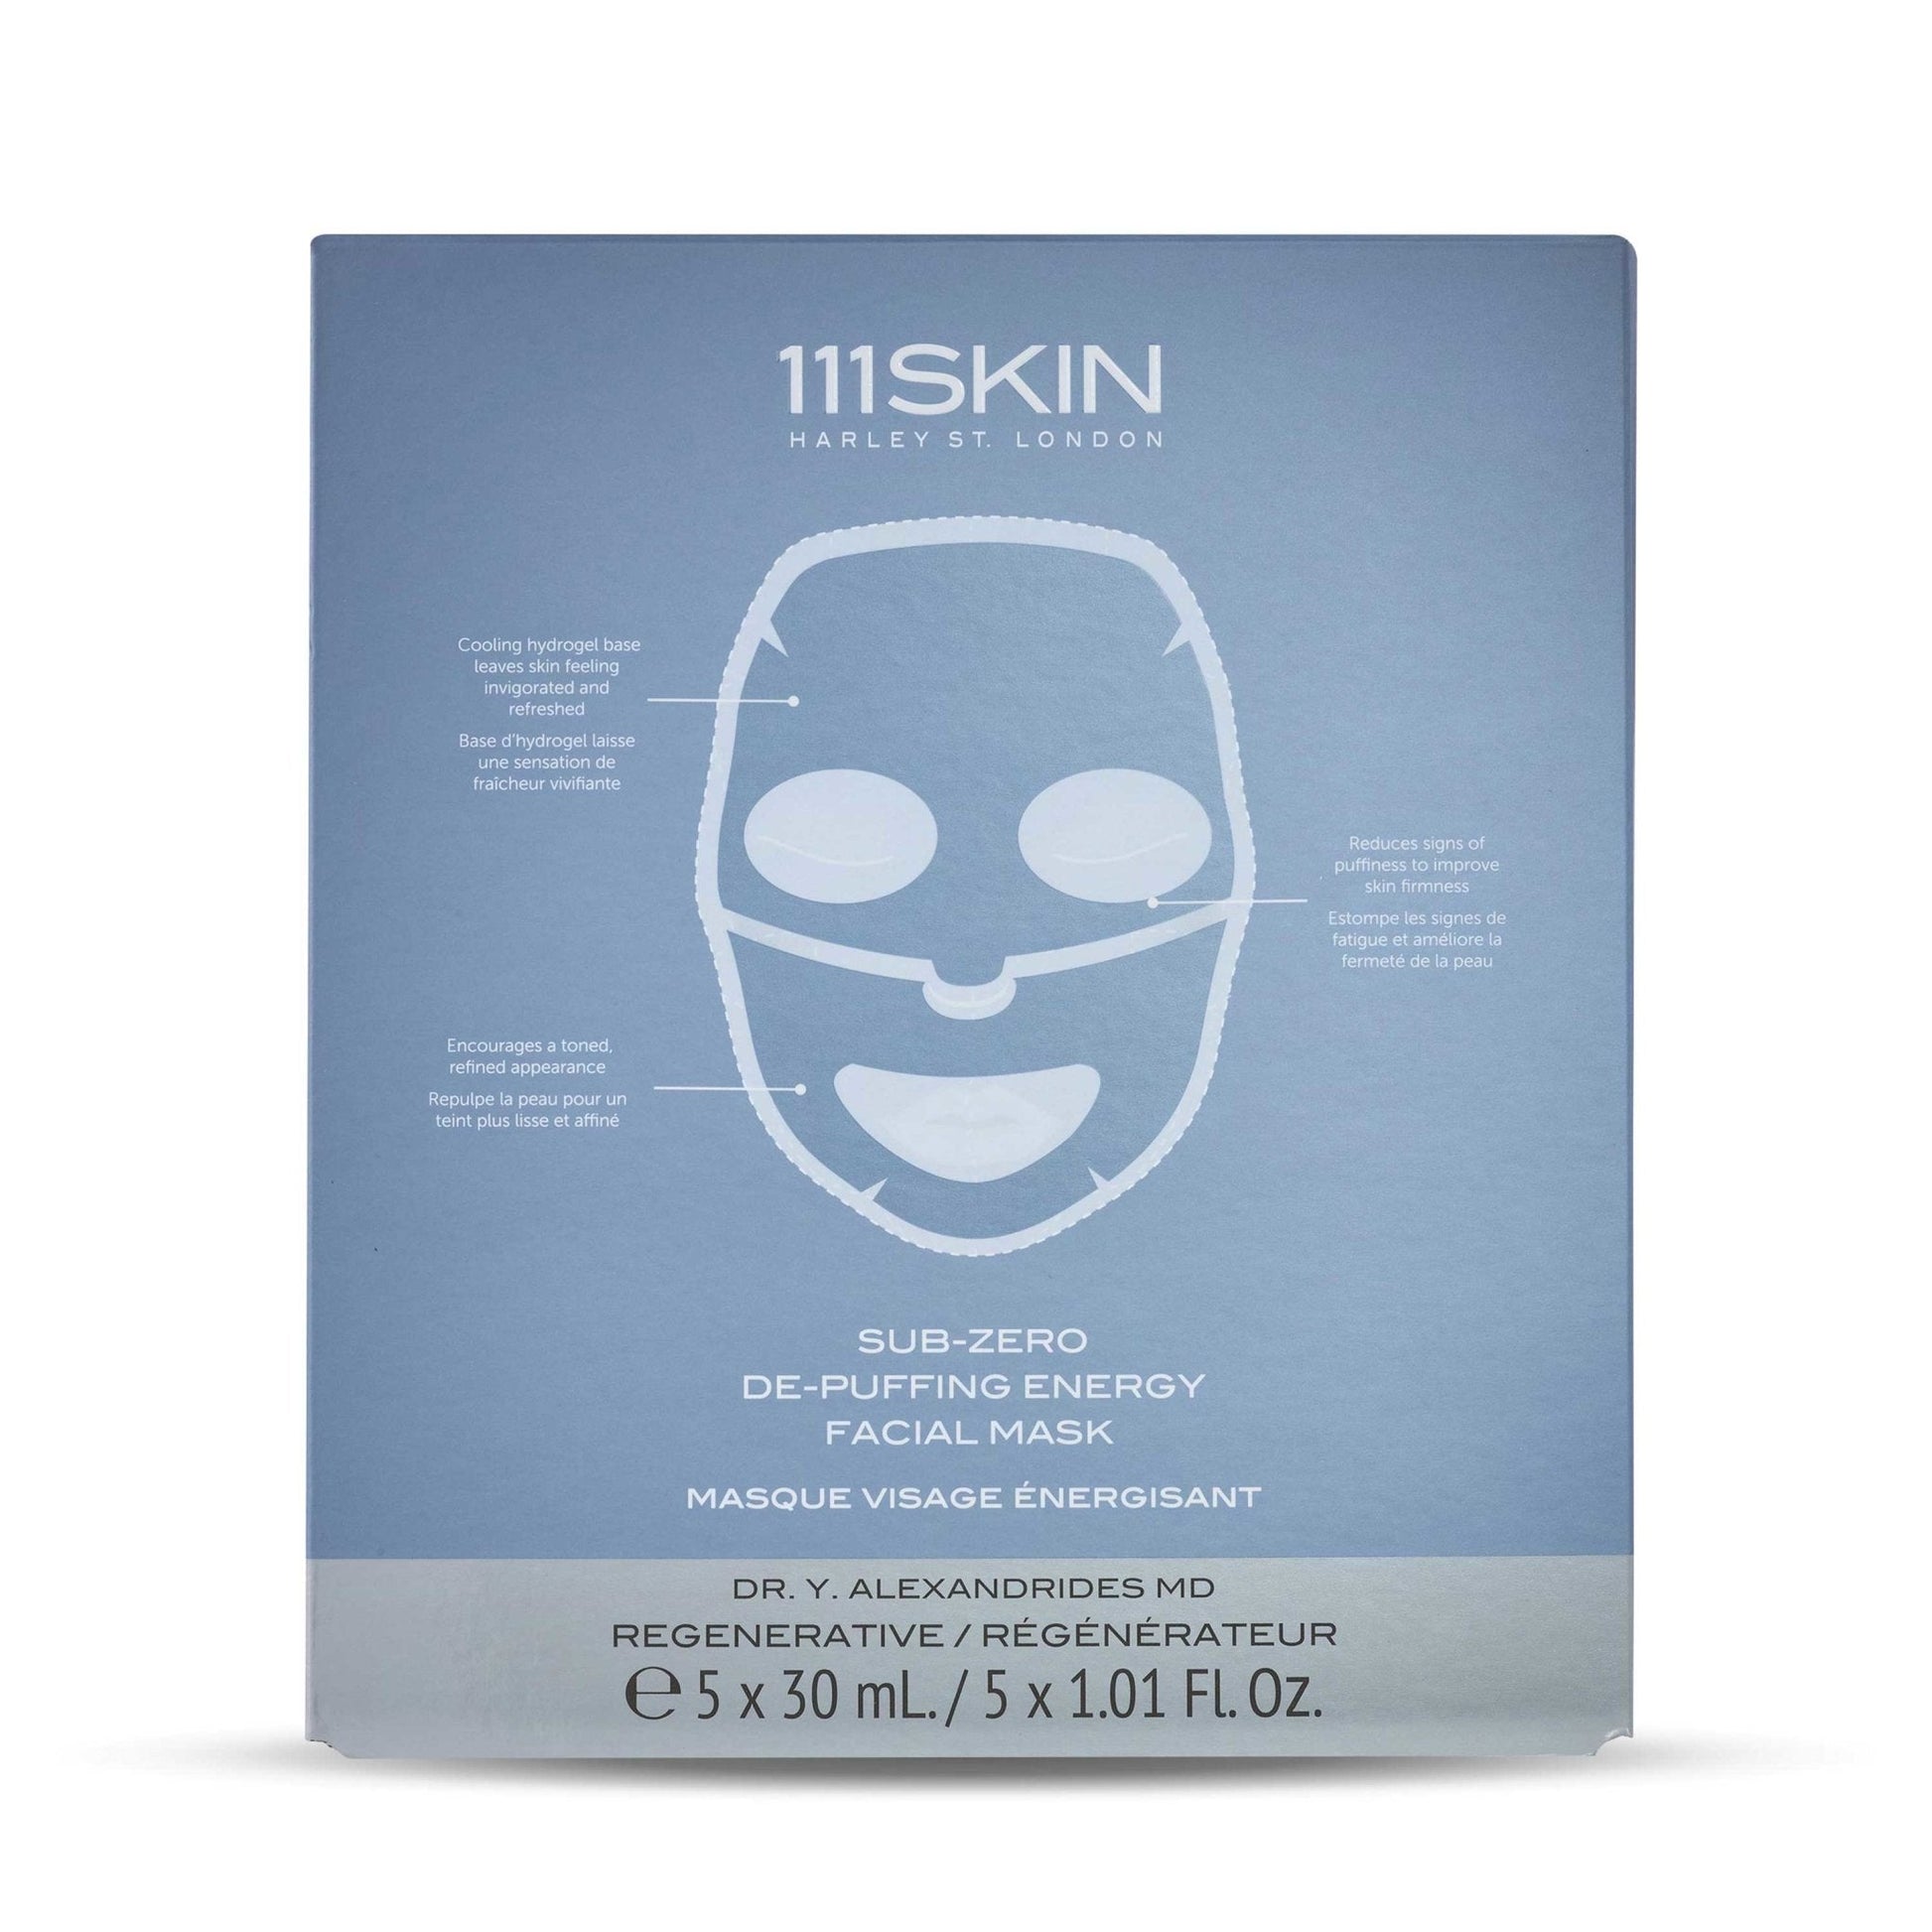 Cryo De-Puffing Facial Mask - 111SKIN